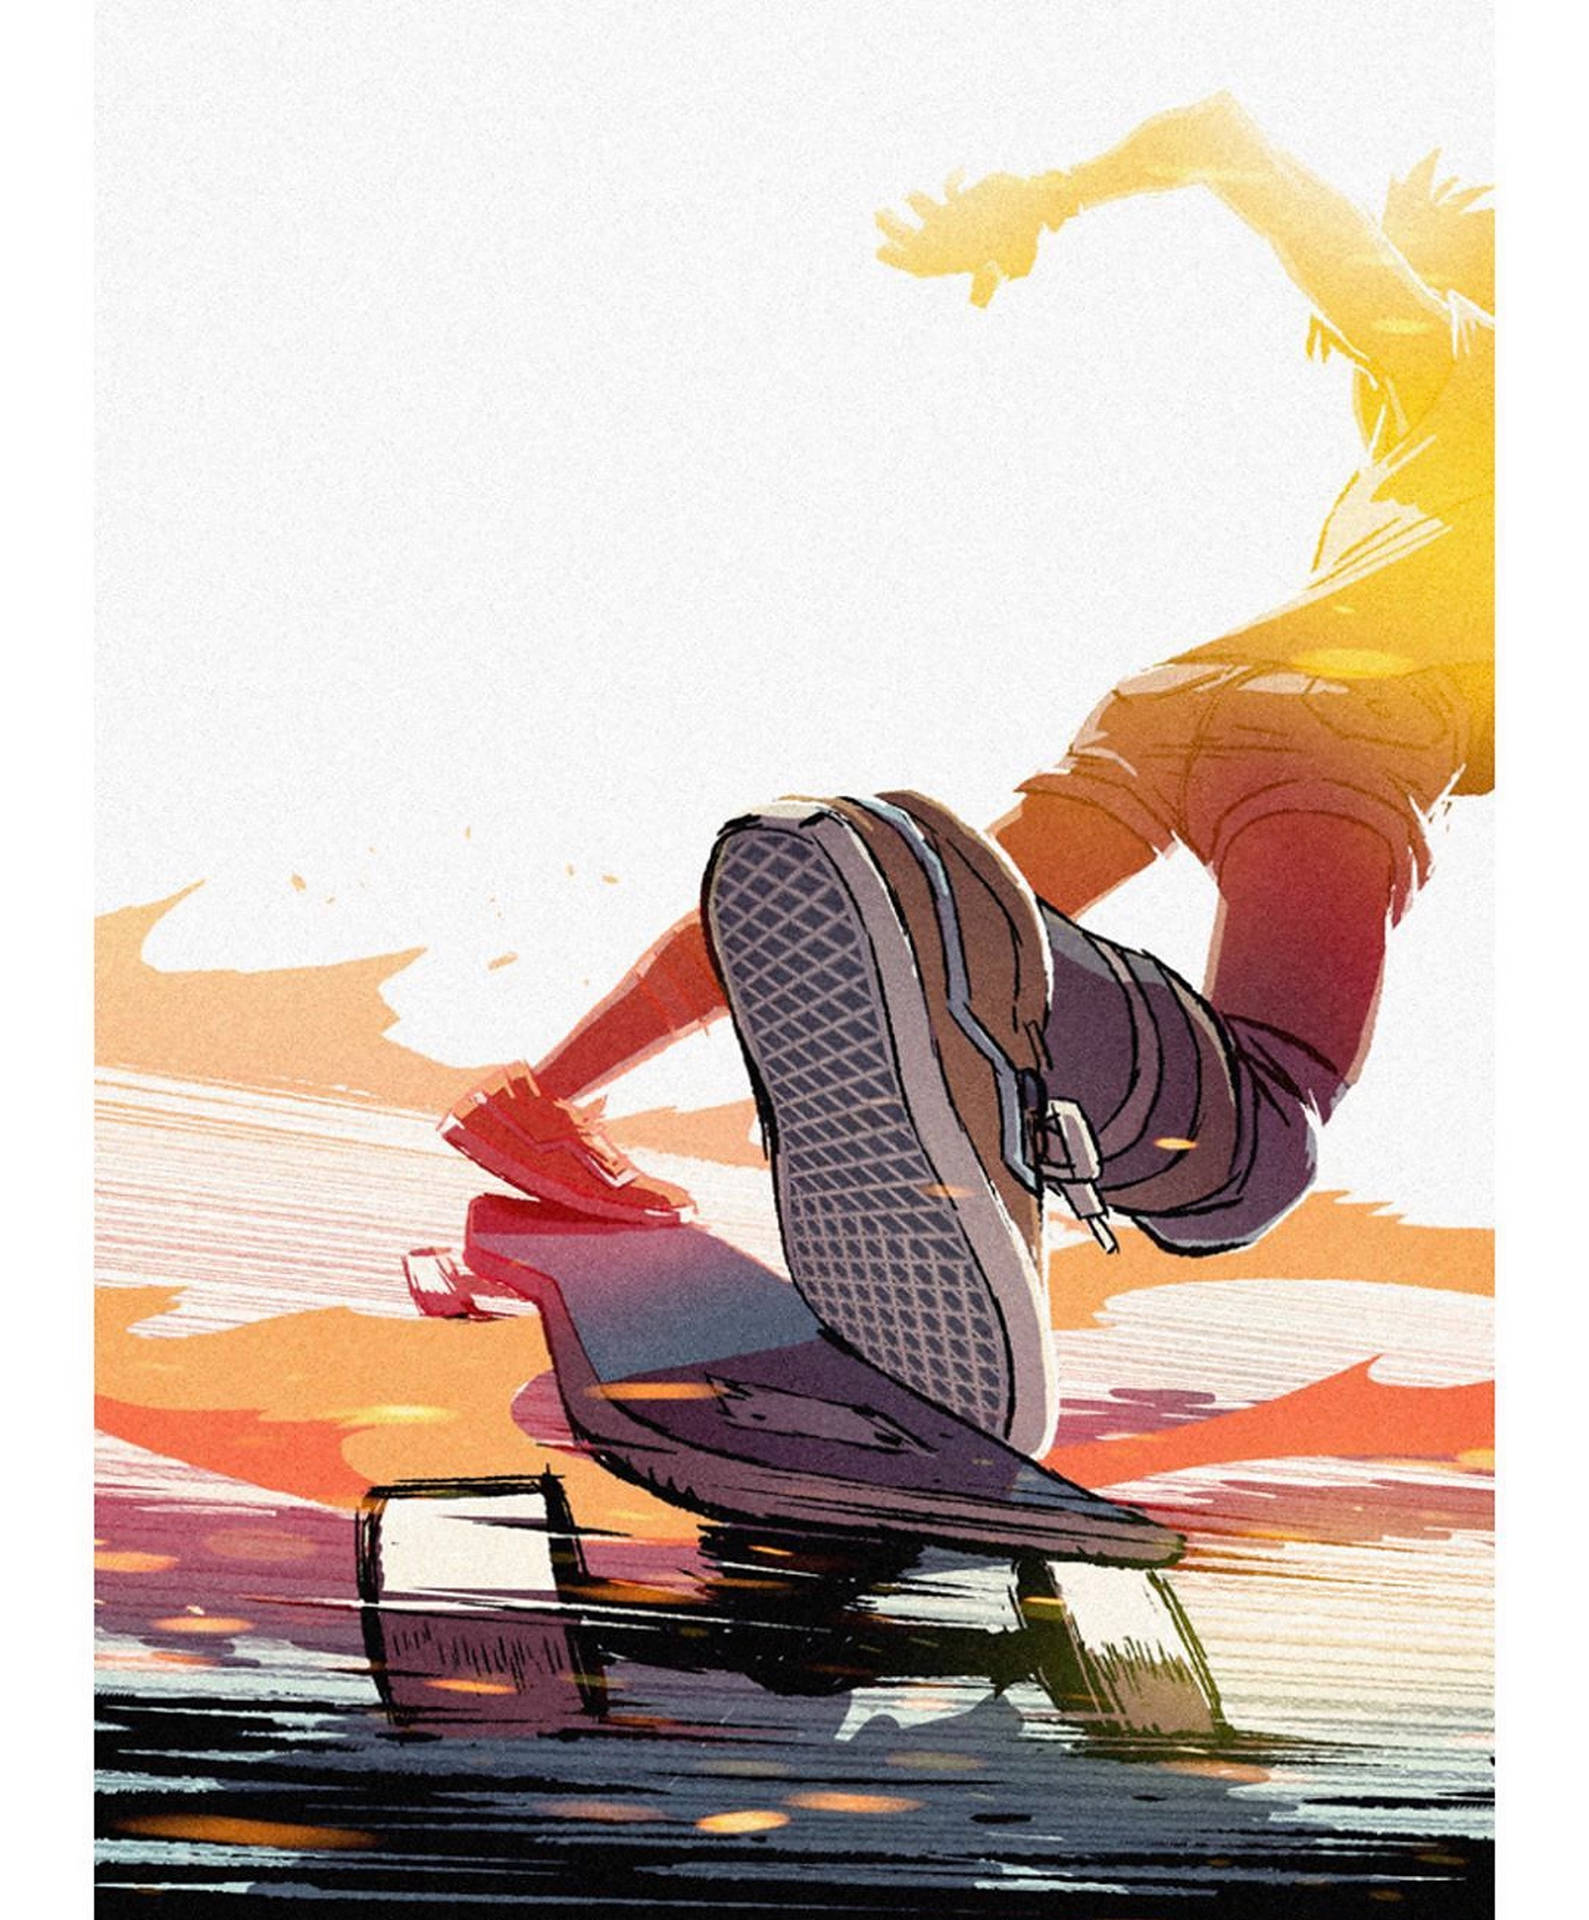 Aesthetic Skater Boy Comic Art Background